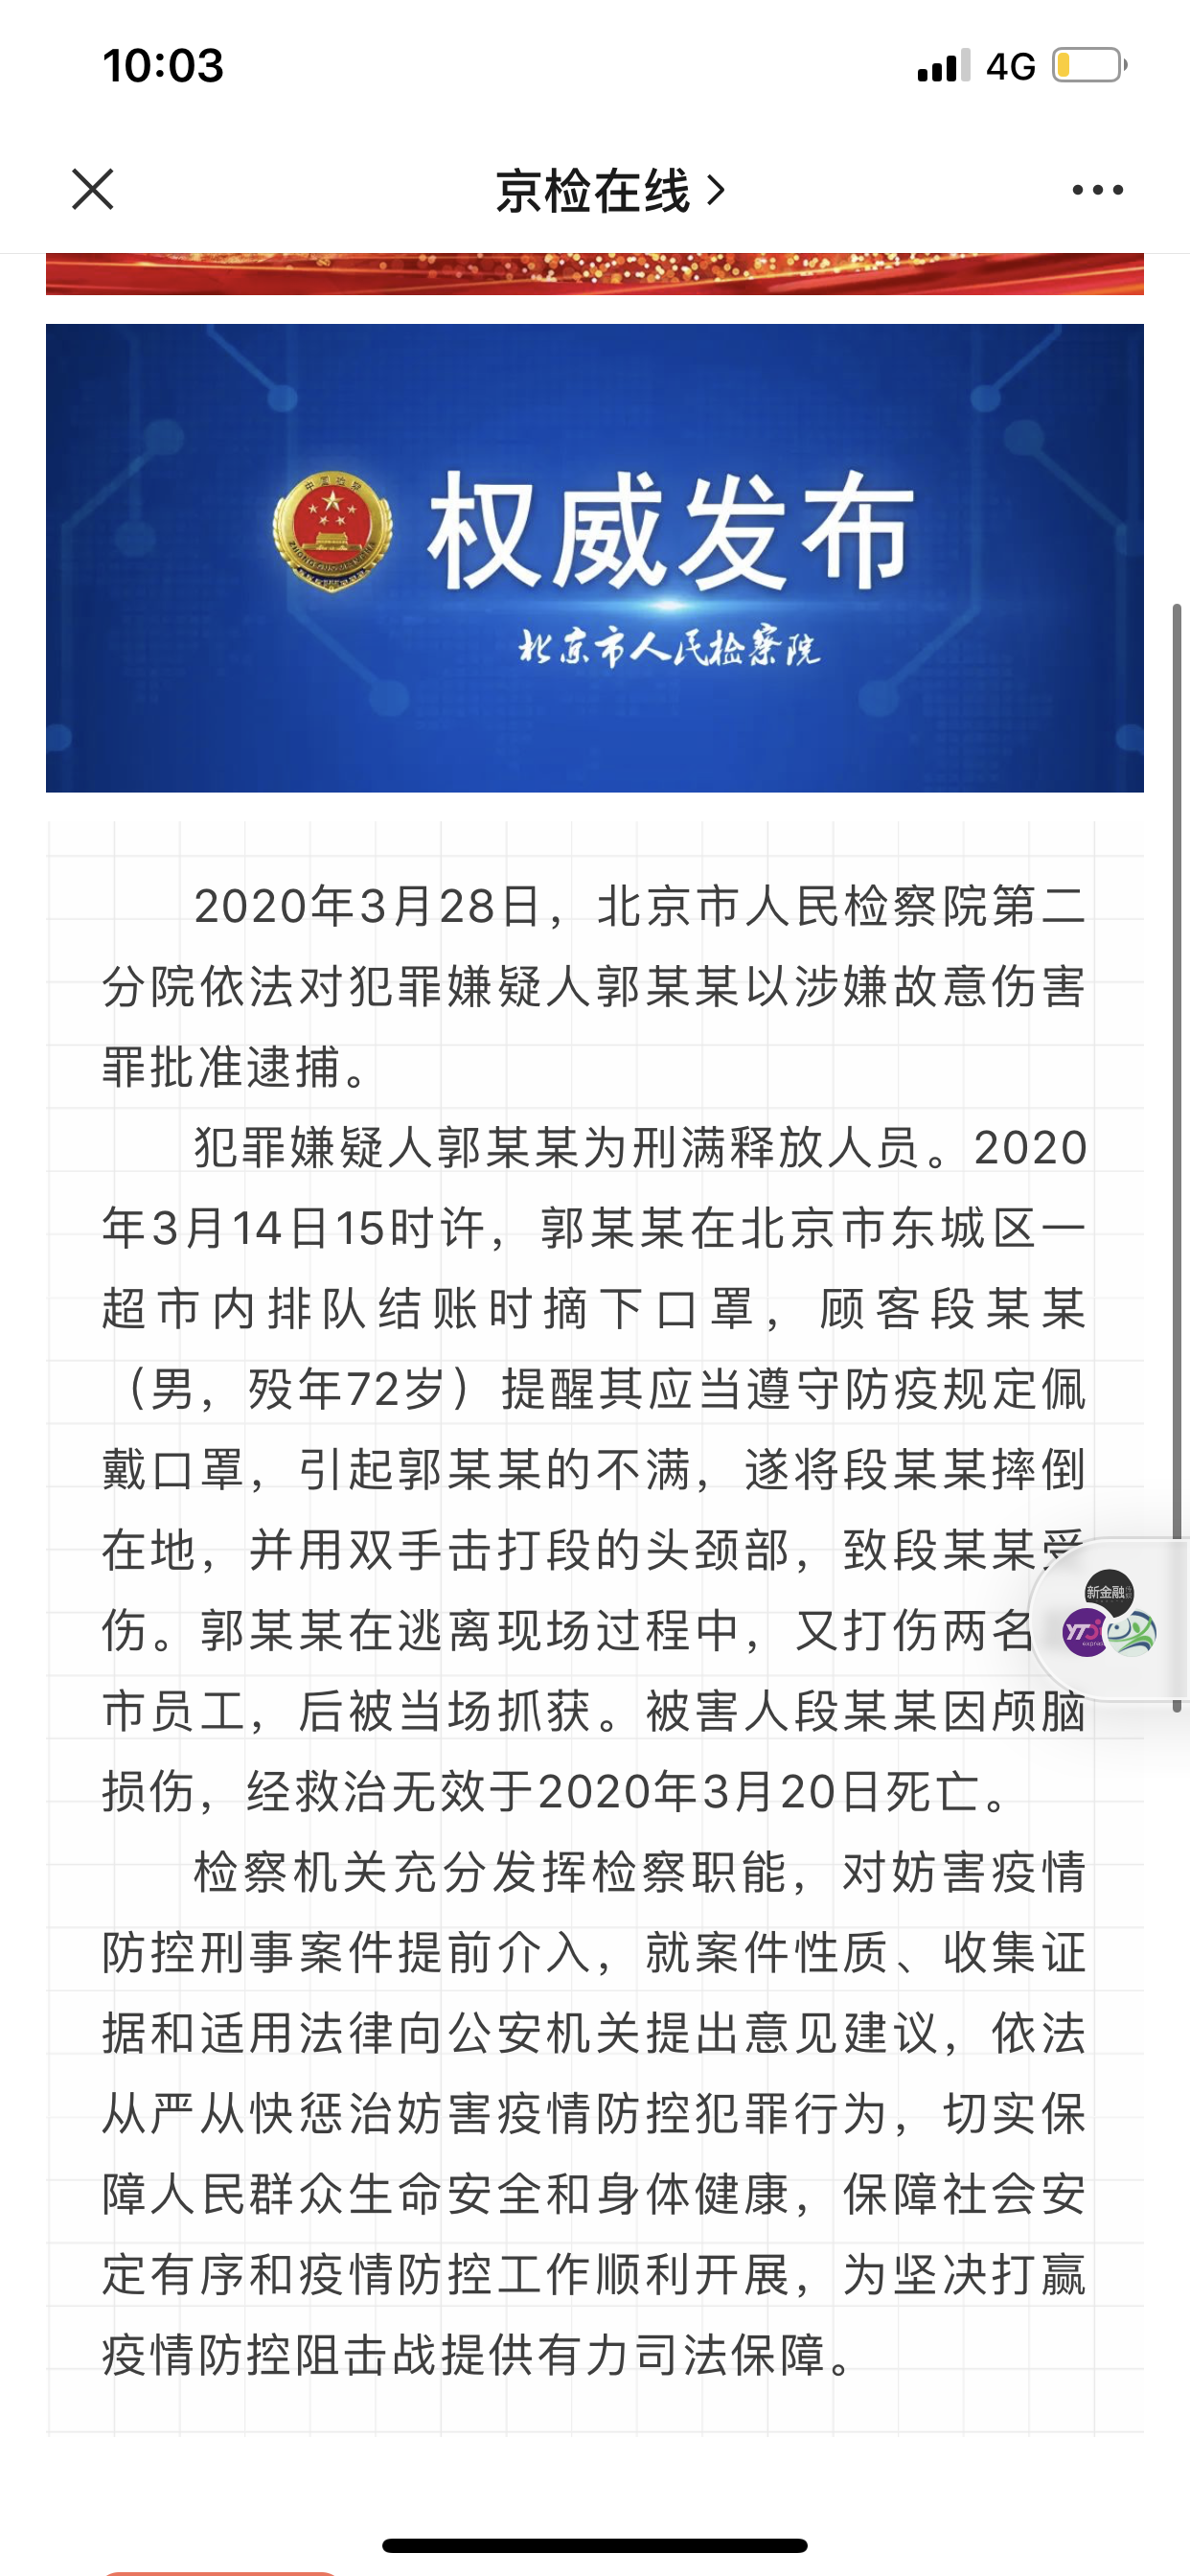 北京市检察院第二分院通报截图。